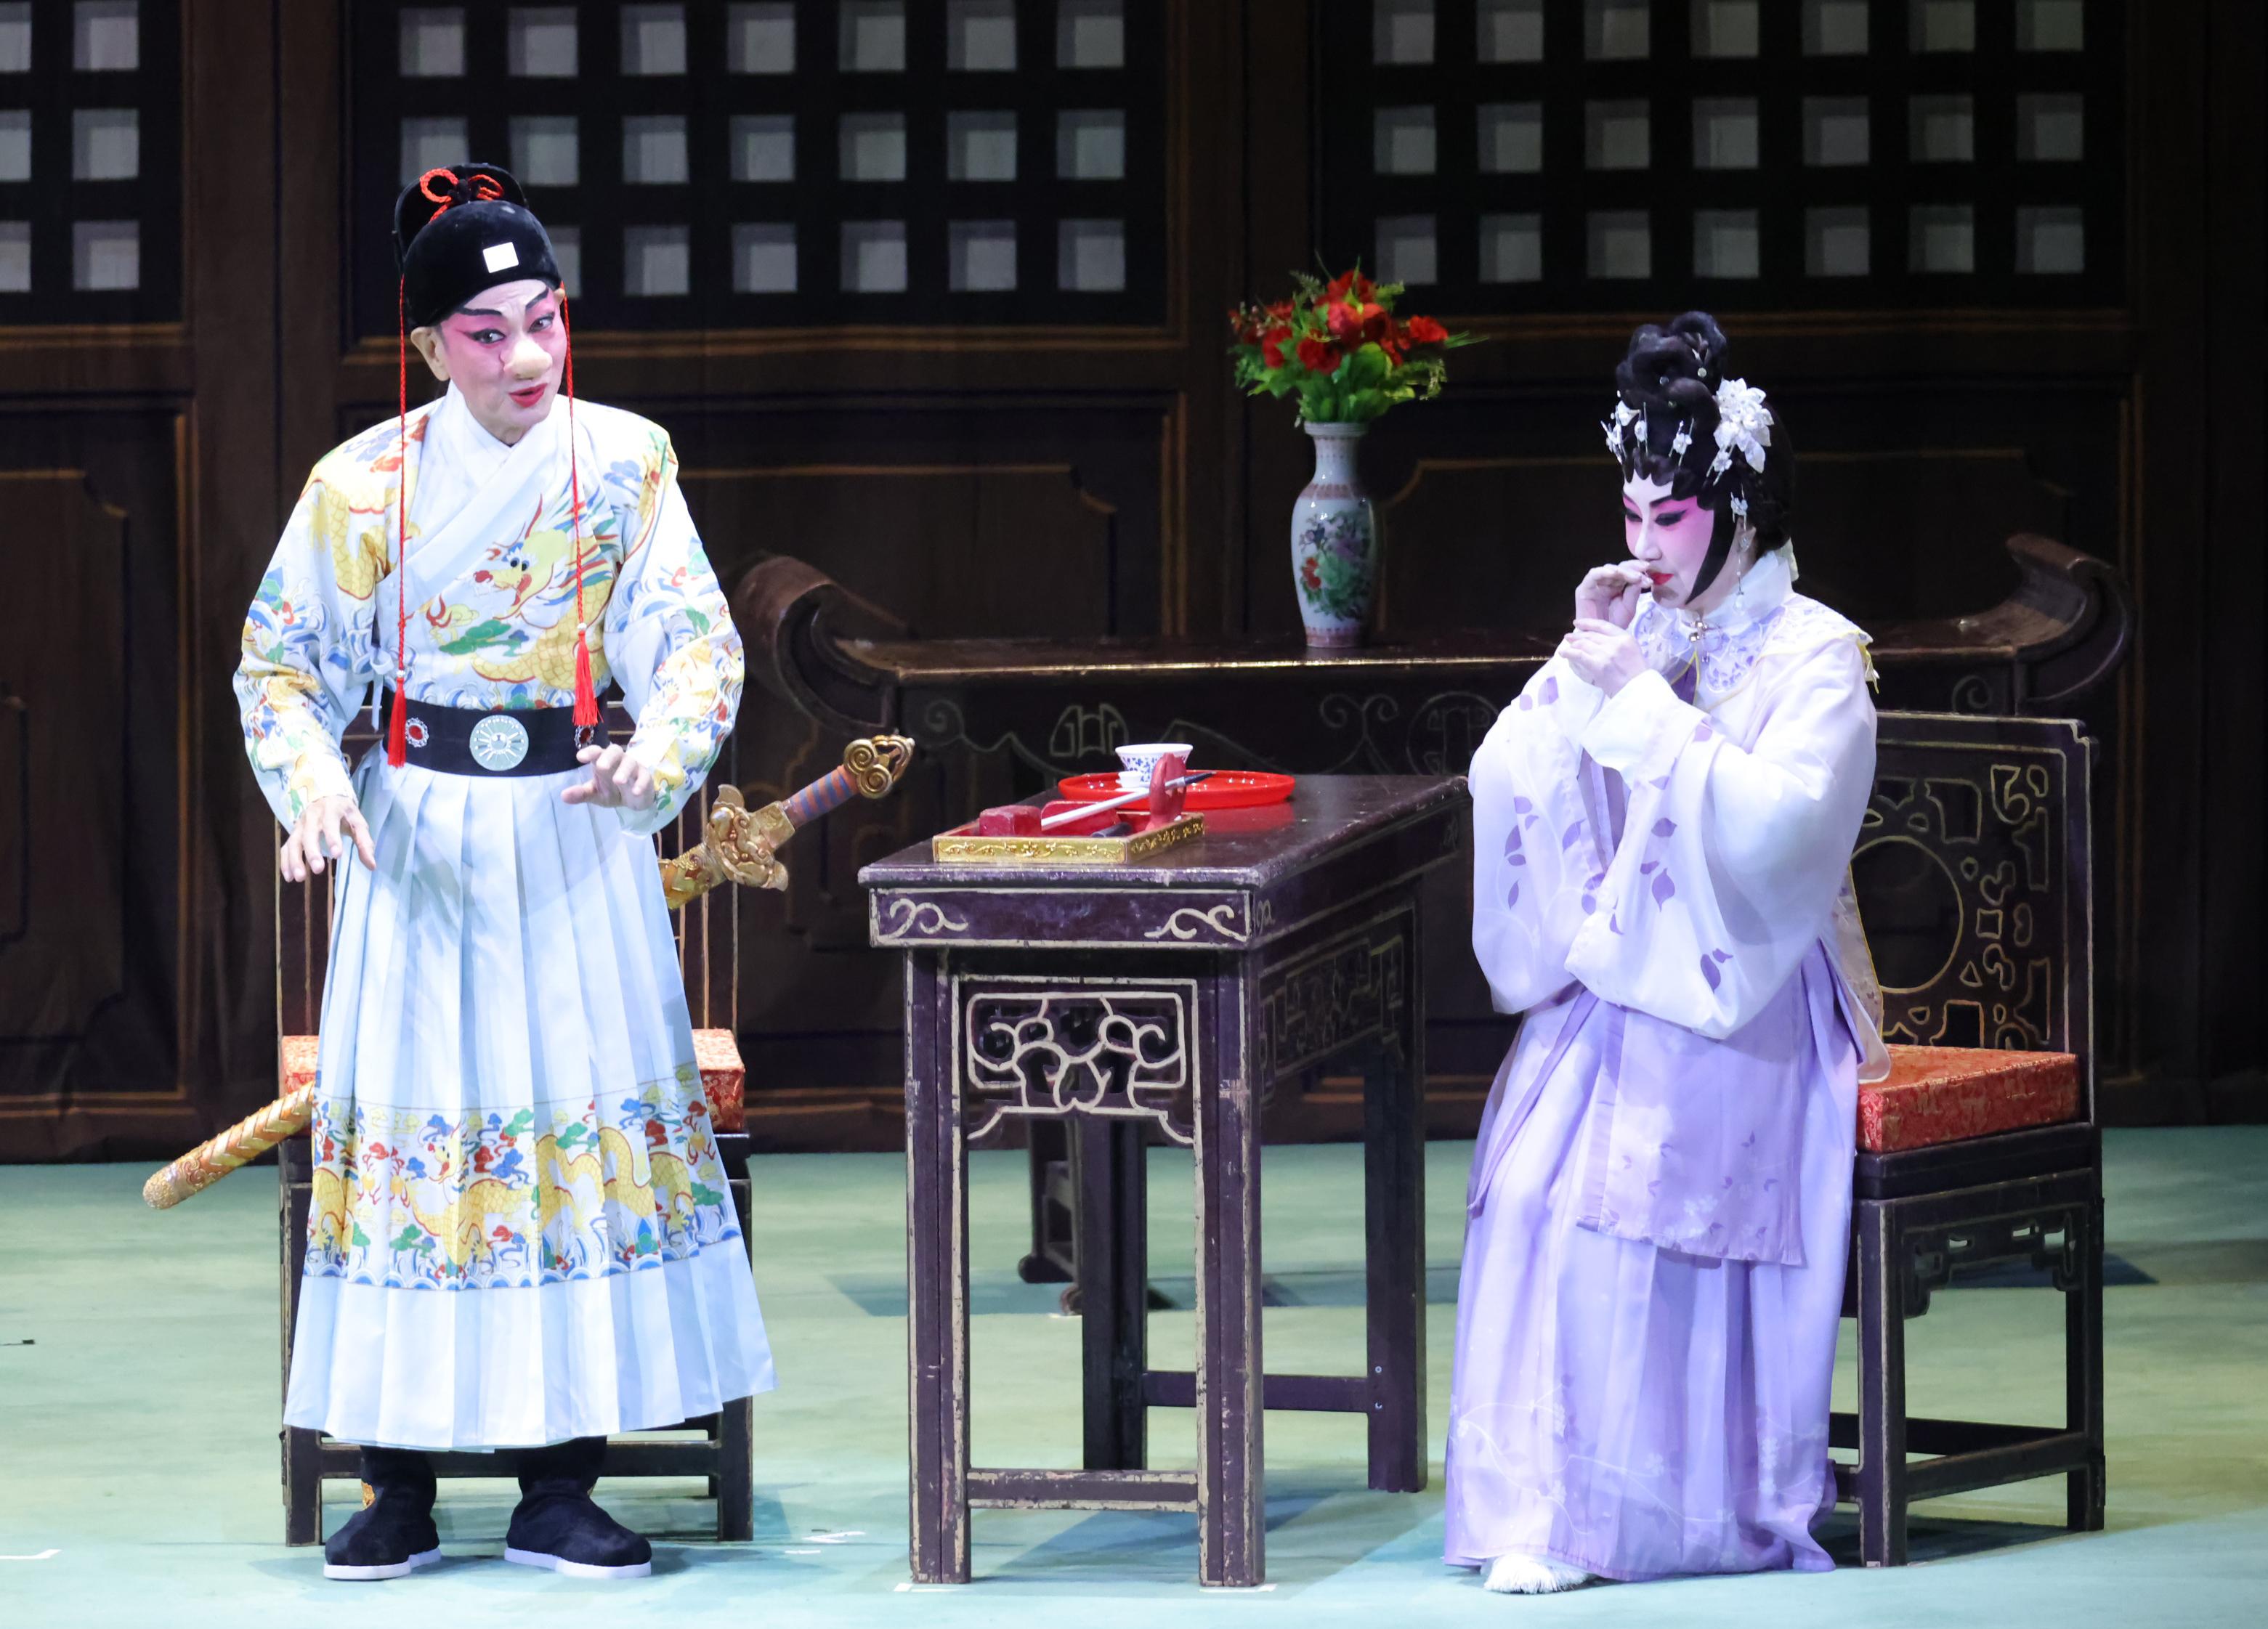 新编粤剧《大鼻子情圣》为首届「中华文化节」戏曲演出打响头锣。图示新编粤剧《大鼻子情圣》的演出场景。